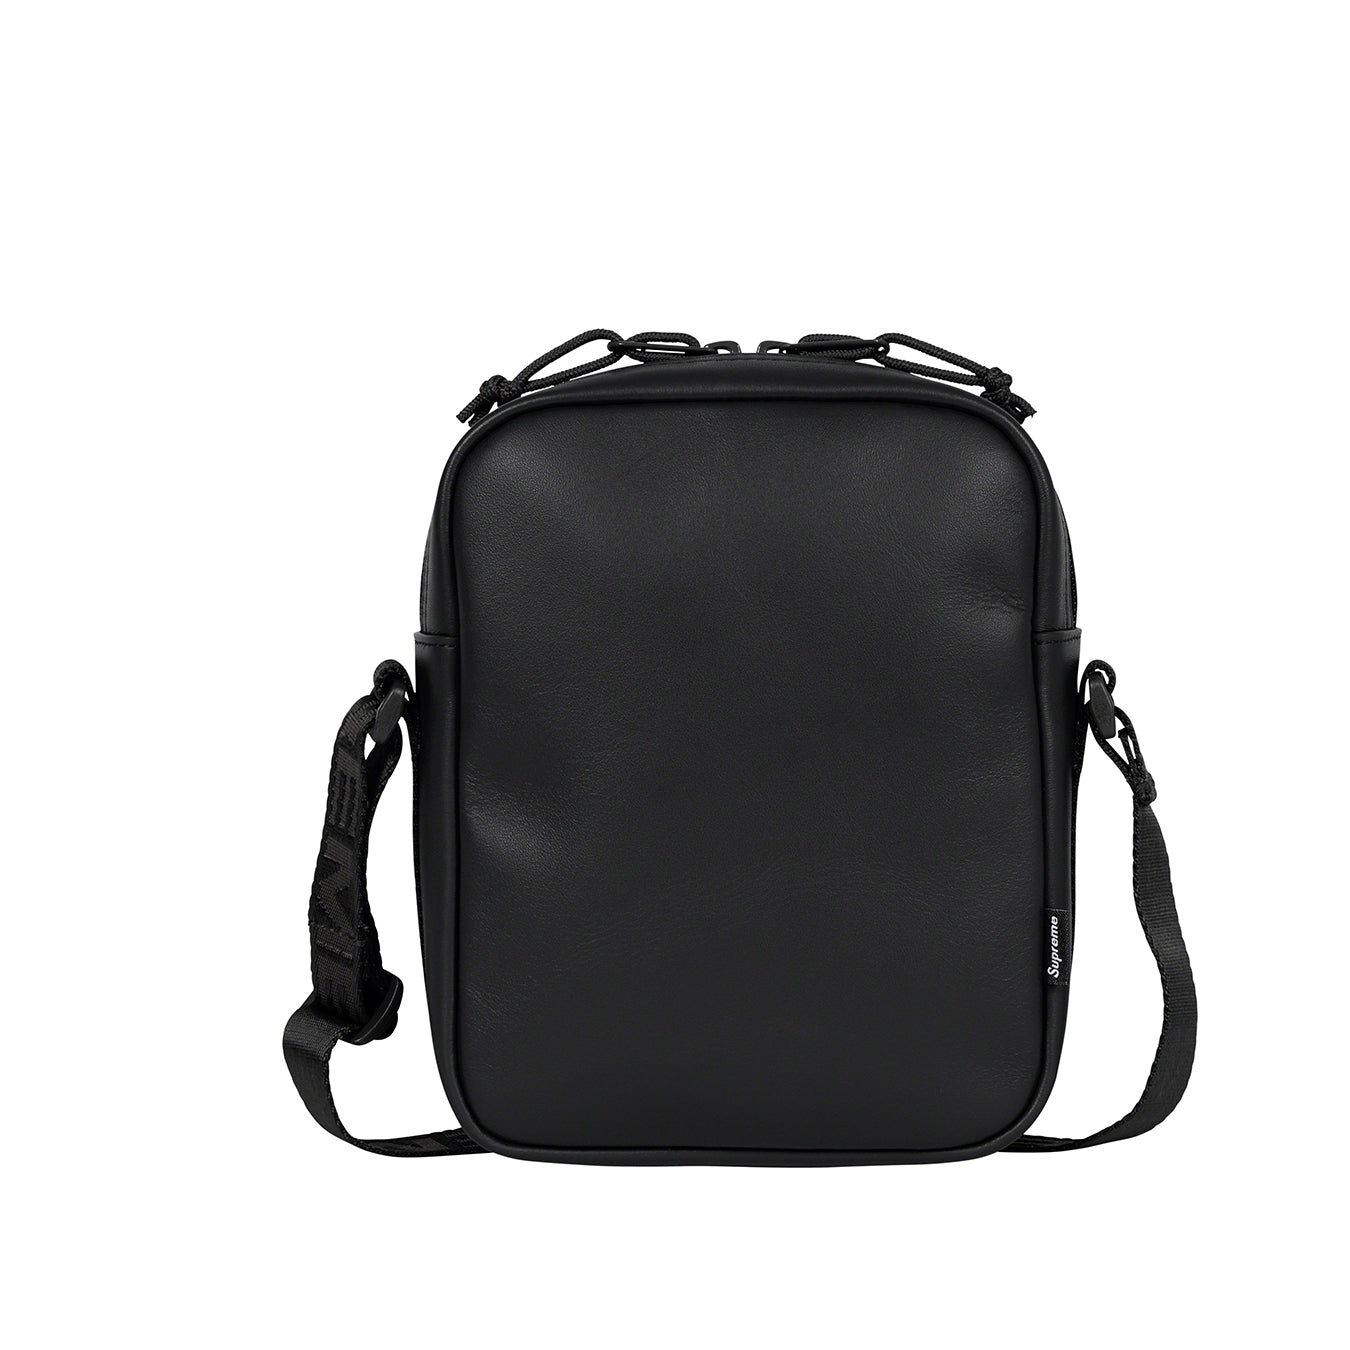 Supreme Leather Shoulder Bag "Black"